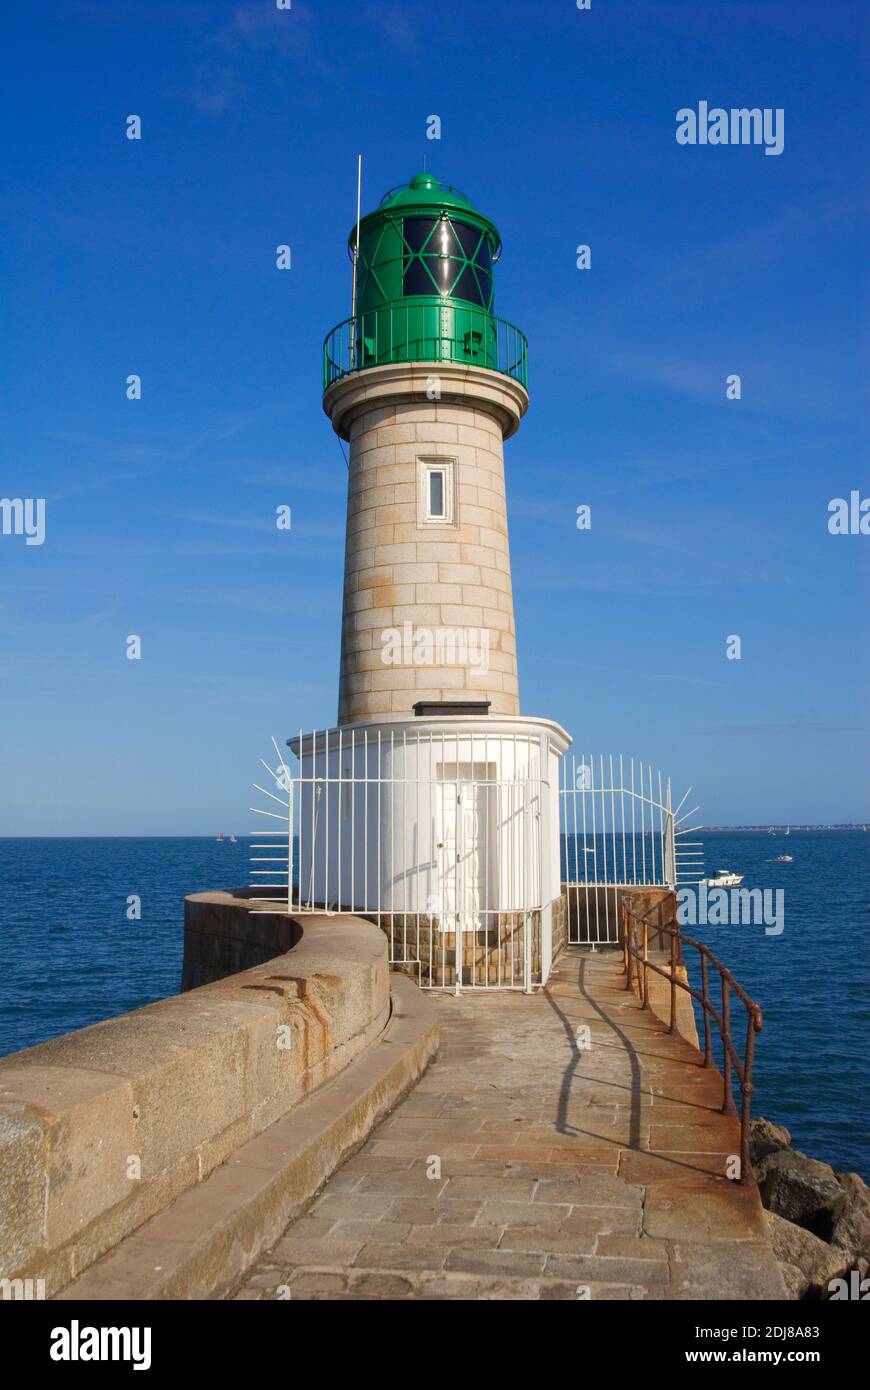 Frankreich, Bretagne, Pays de la Loire, Loire Atlantique, Halbinsel Guerande, Le Croisic, Leuchtturm, Phare de la JetÈe de TrÈhic Foto Stock